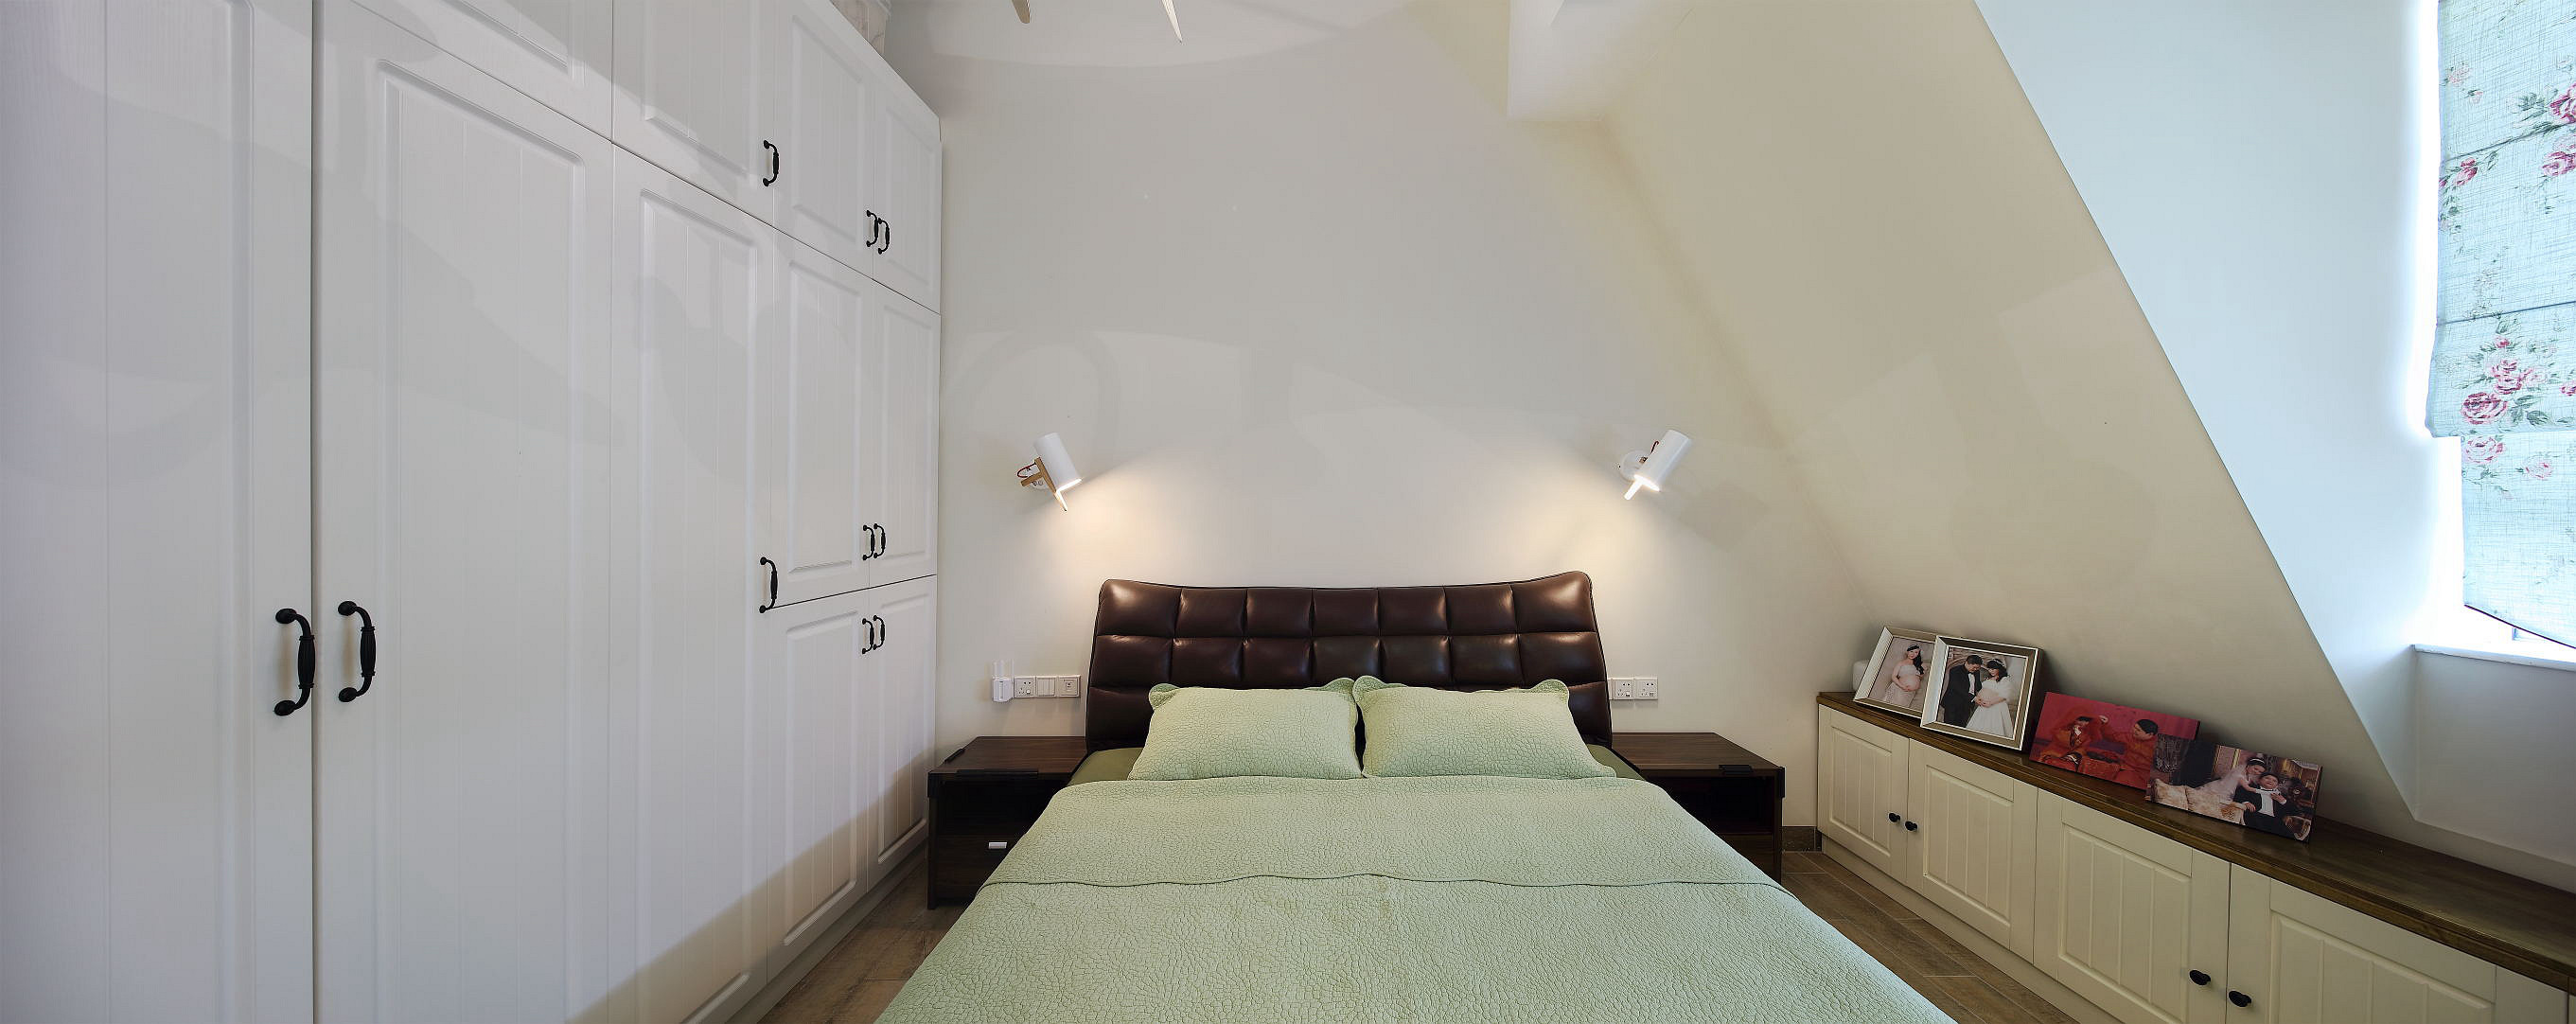 复式北欧风格家卧室设计图